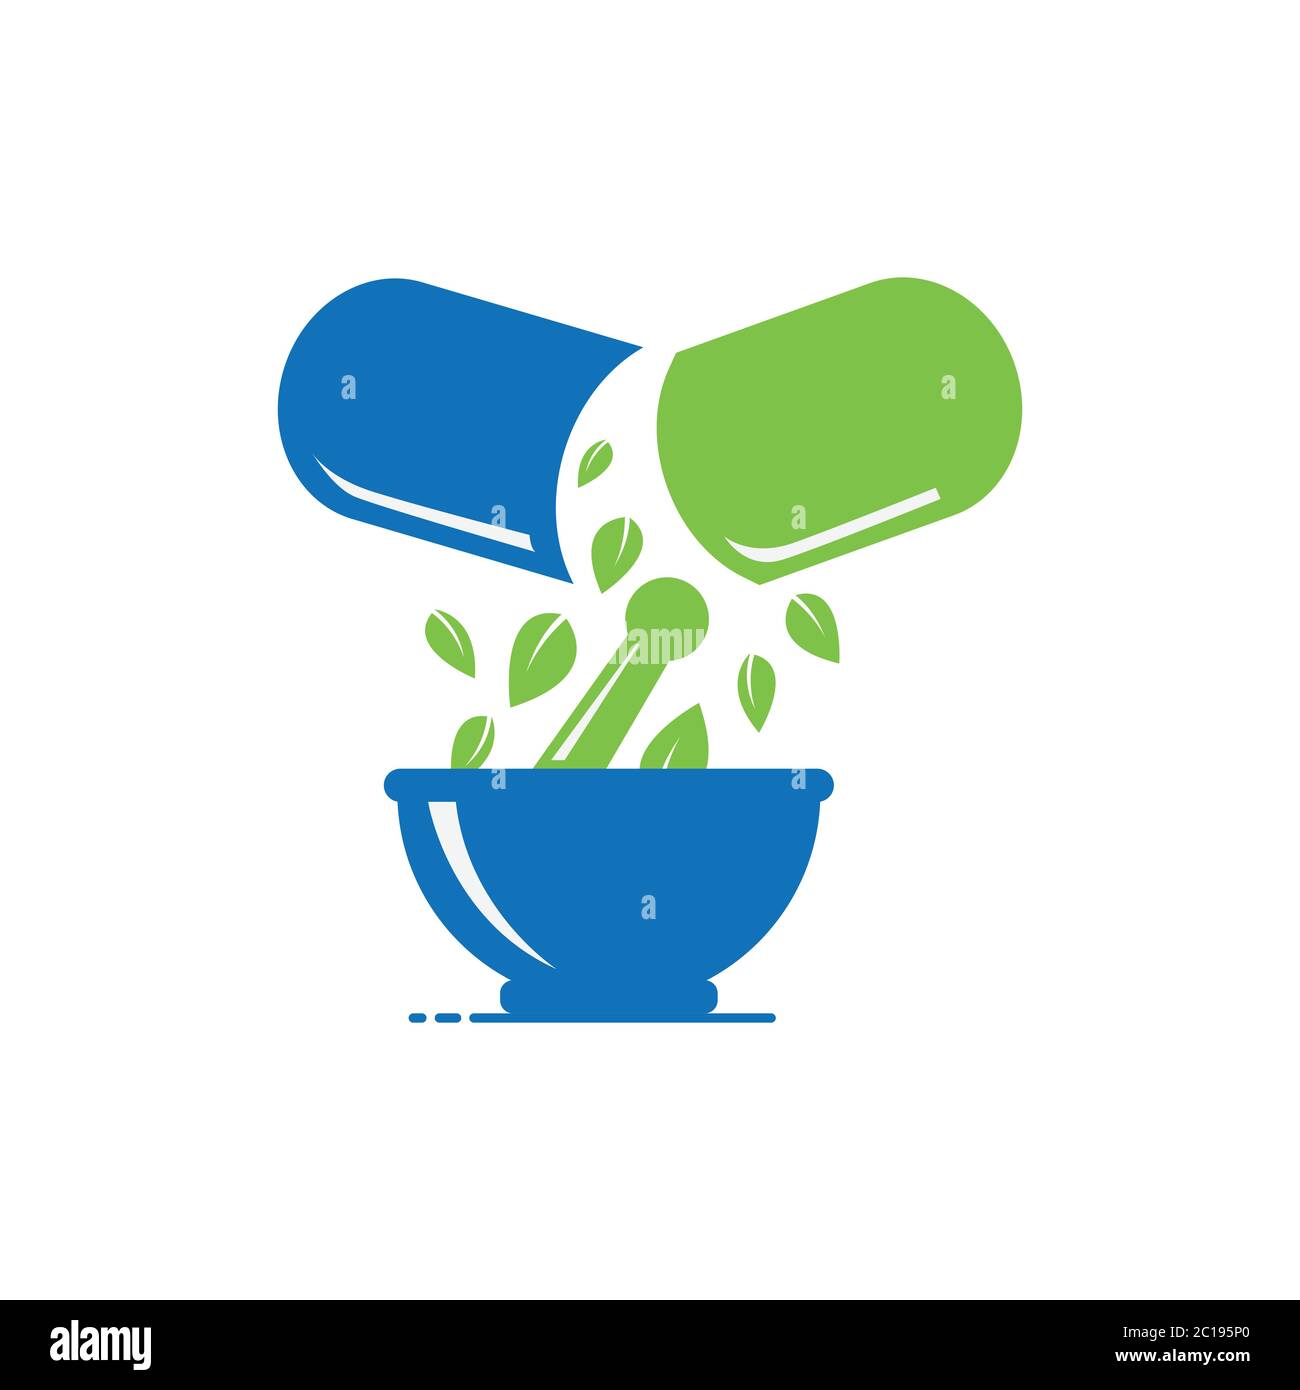 Logo Design For Pharmacy